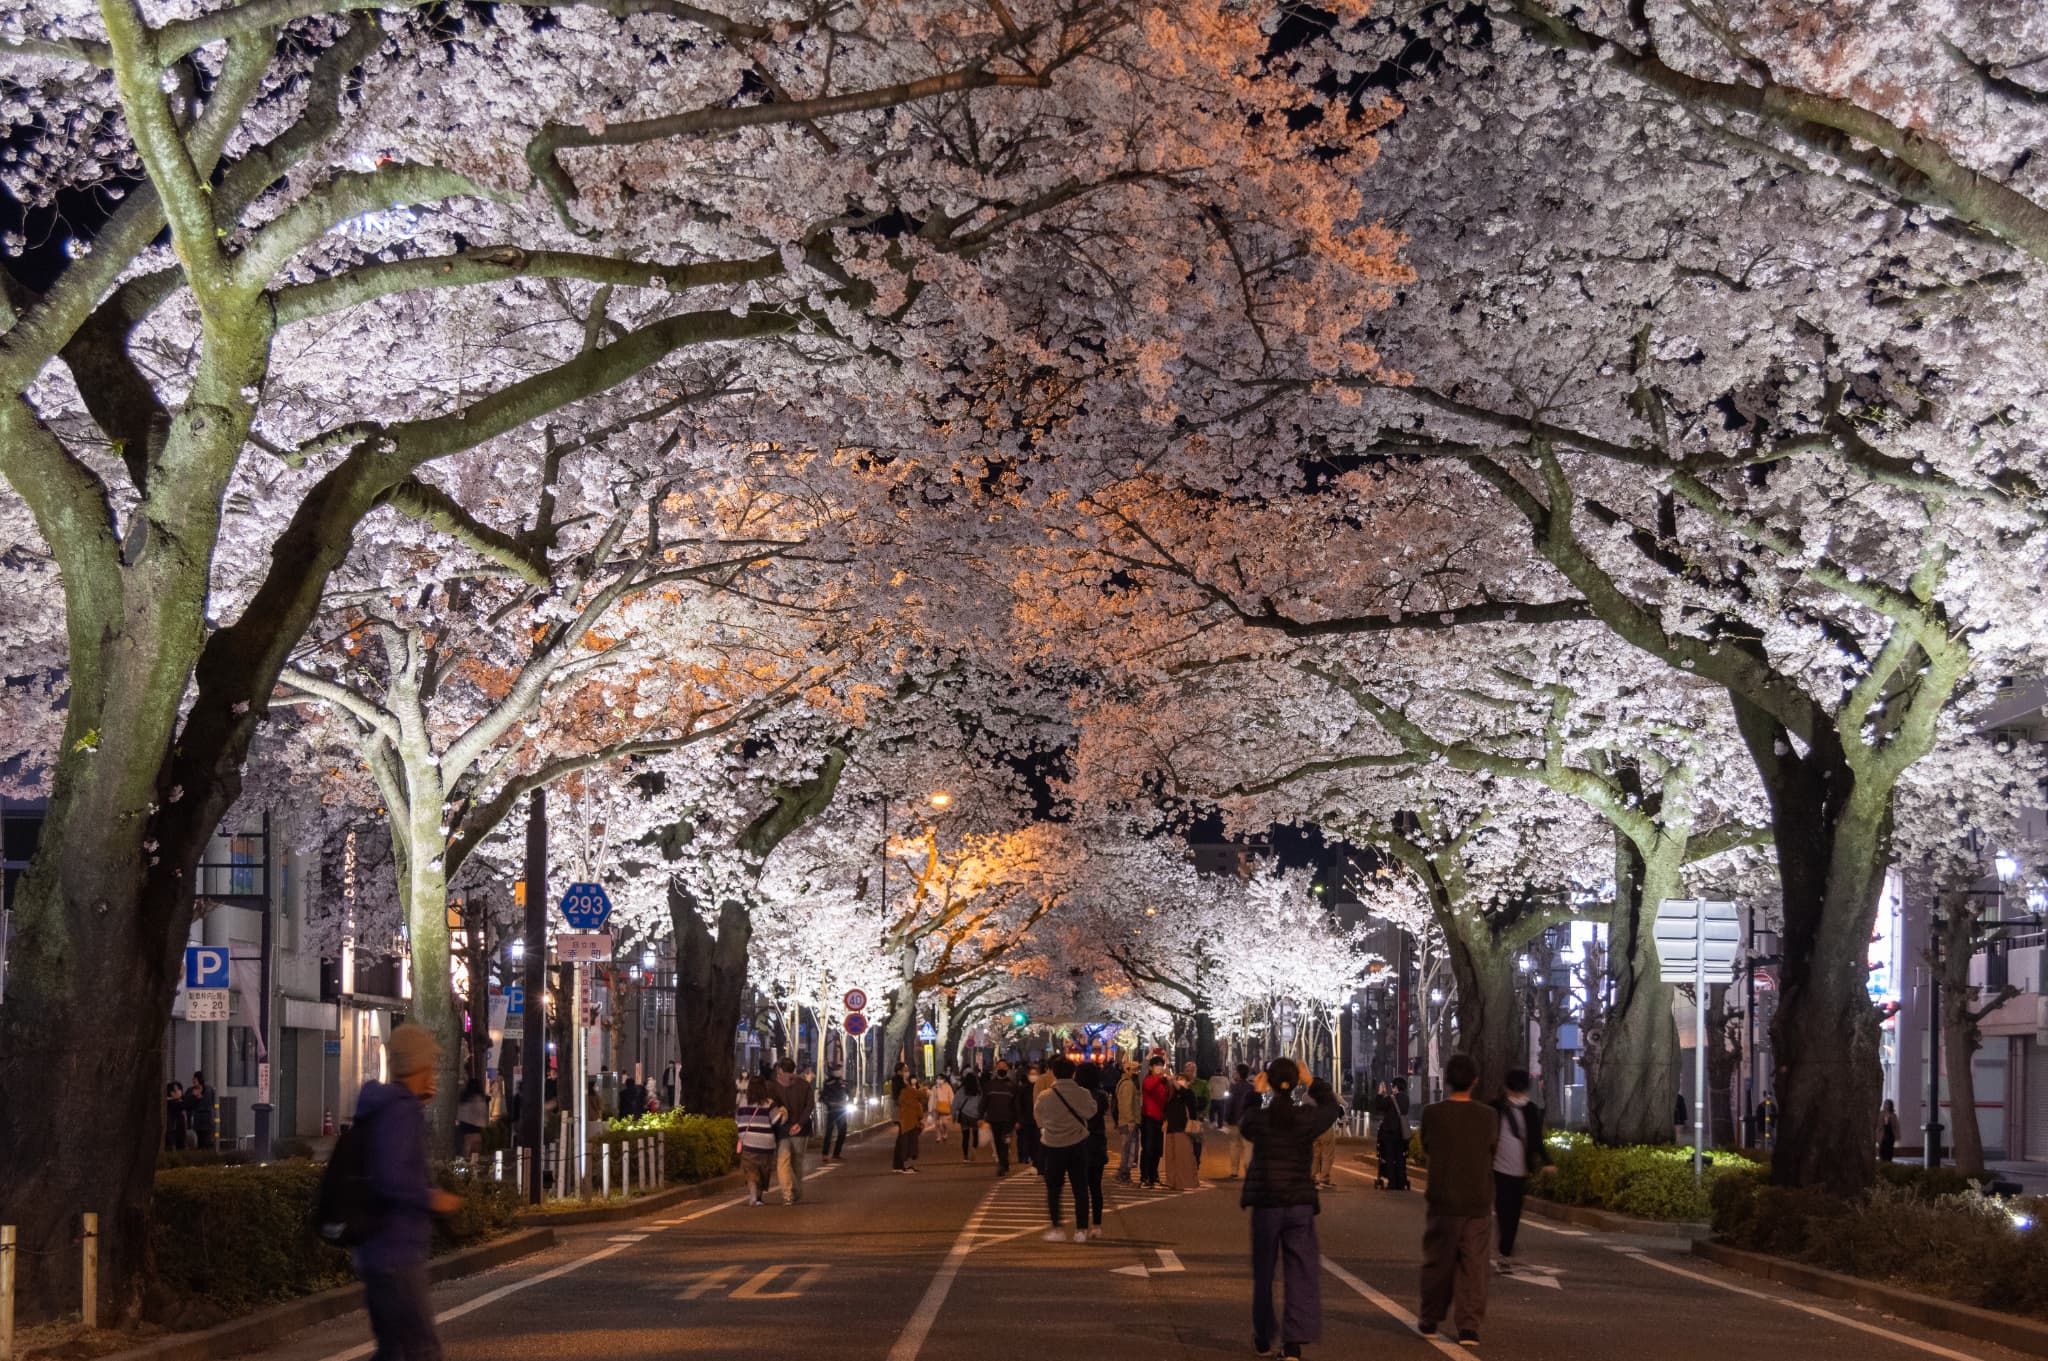 第59回日立さくらまつり 平和通り・かみね公園の夜桜ライトアップについての情報